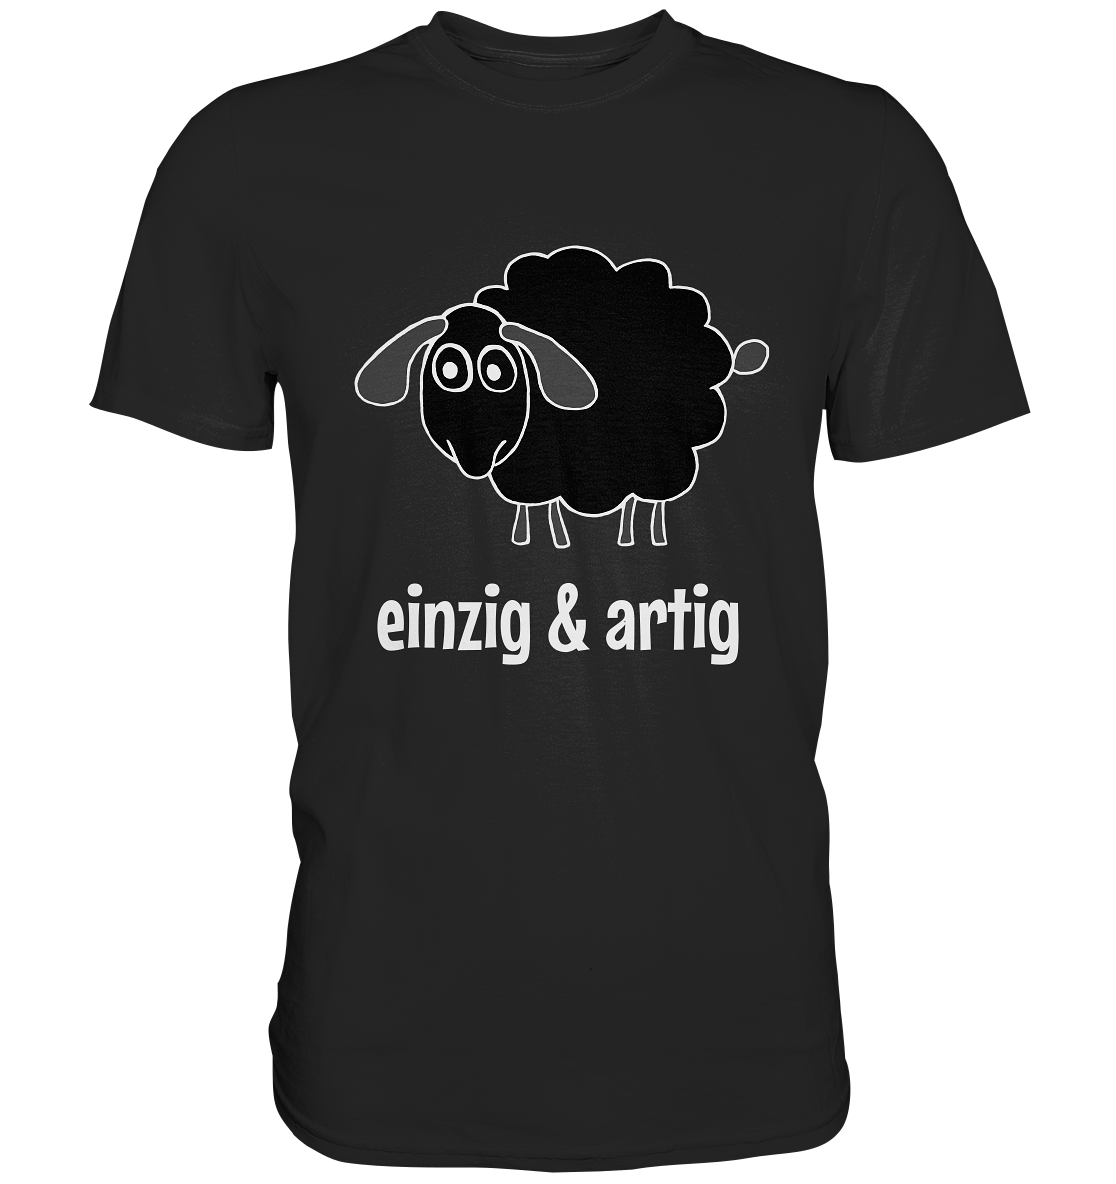 Einzig & artig. Einzigartig! Schwarzes Schaf - Premium Shirt